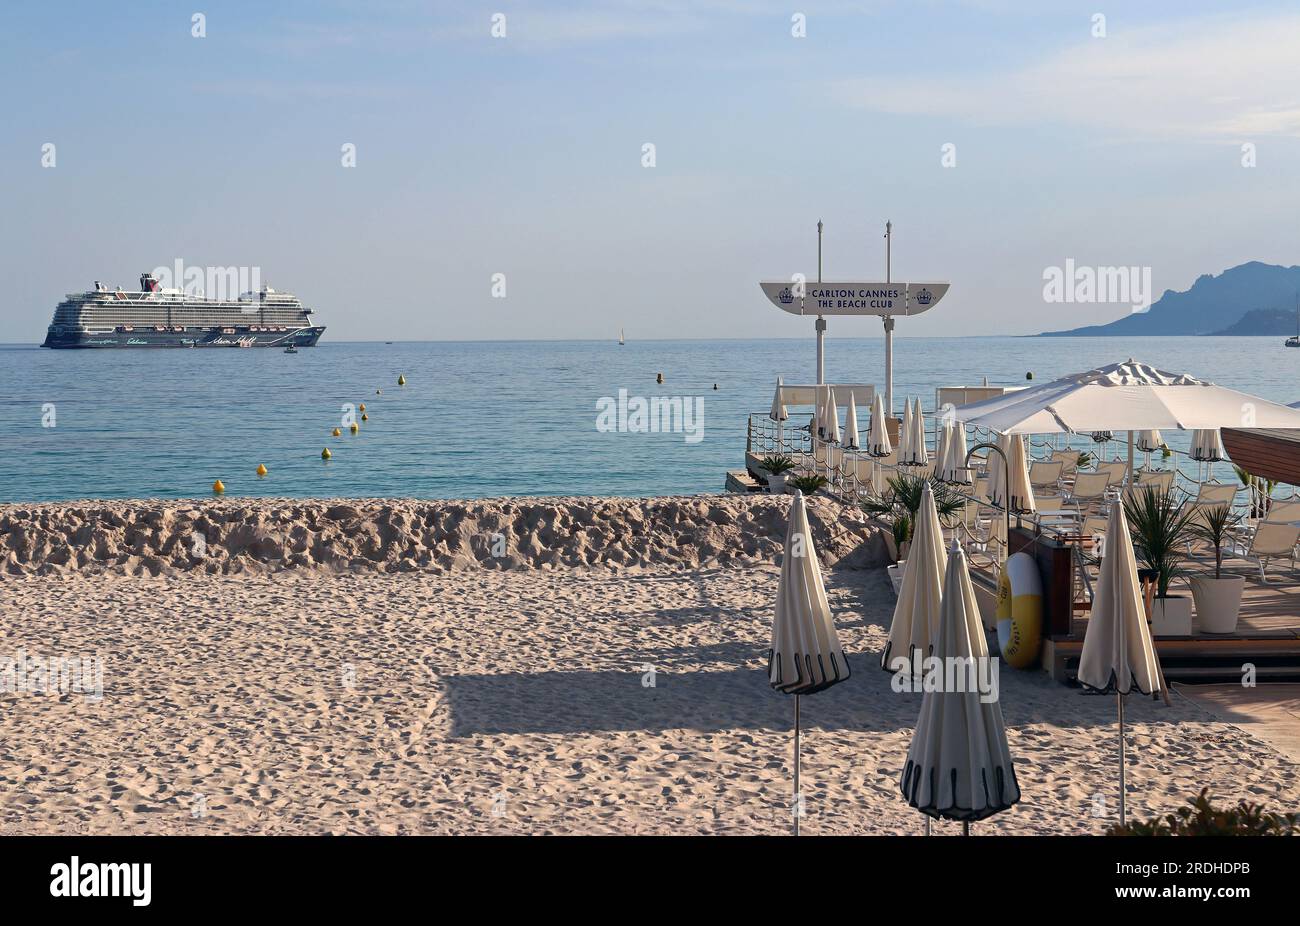 Prima dell'inizio della stagione, il sole cala in prima serata su una parte del Carlton Beach Club di Cannes. In mare, una gigantesca nave da crociera Tui è ormeggiata. Foto Stock